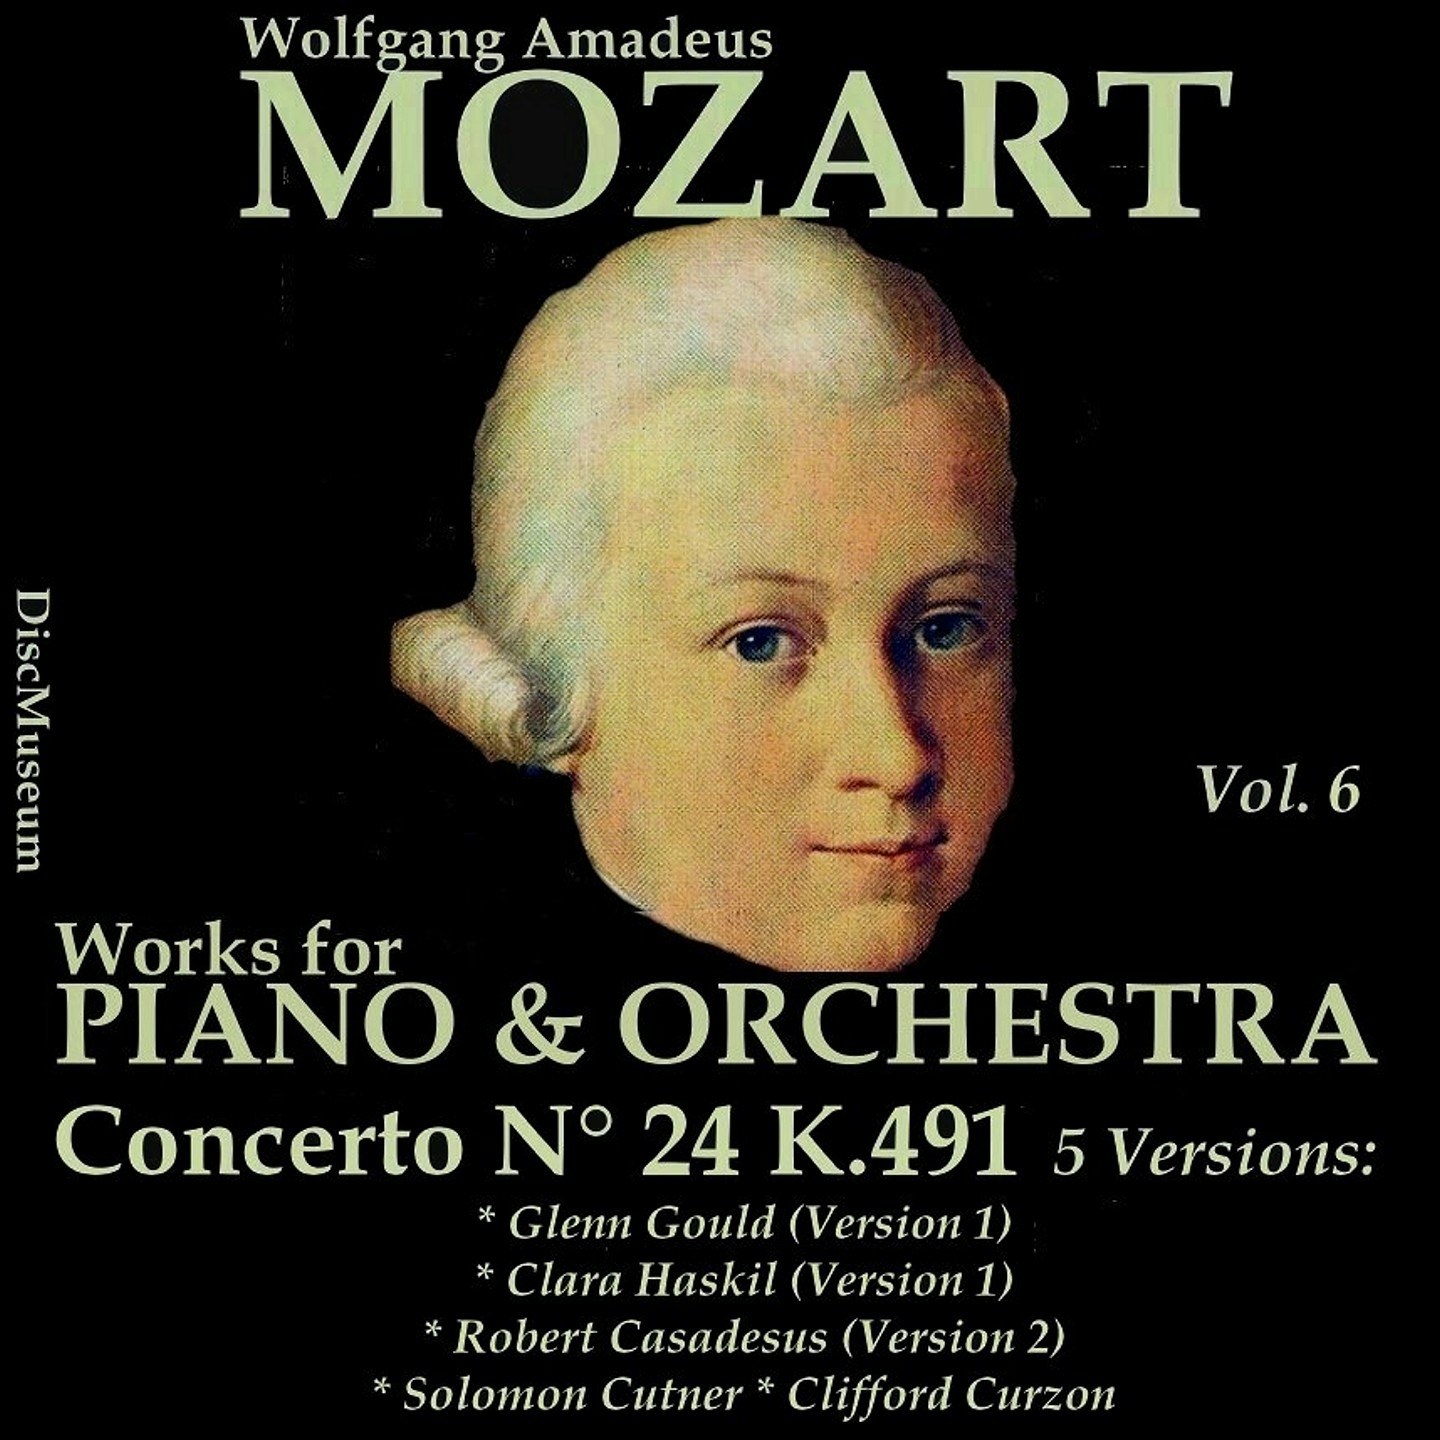 Concerto No. 24 for Piano and Orchestra in C Minor, K491: I. Allegro